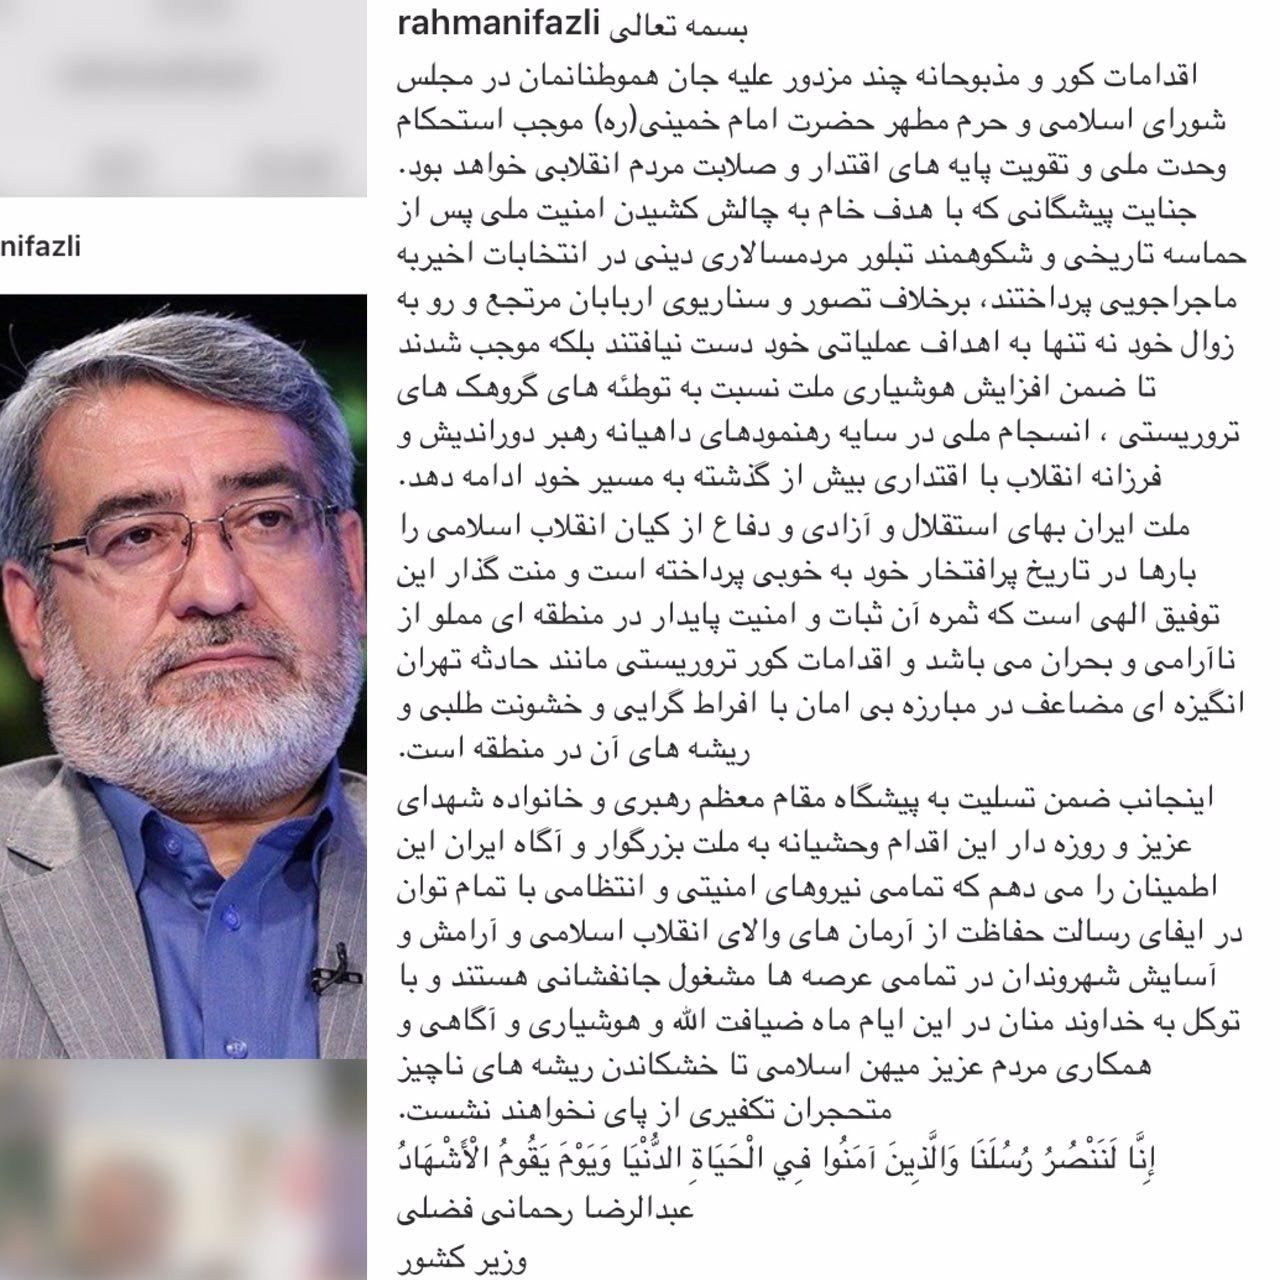 واكنش اینستاگرامی وزیر کشور به حملات تروریستی در تهران + عکس